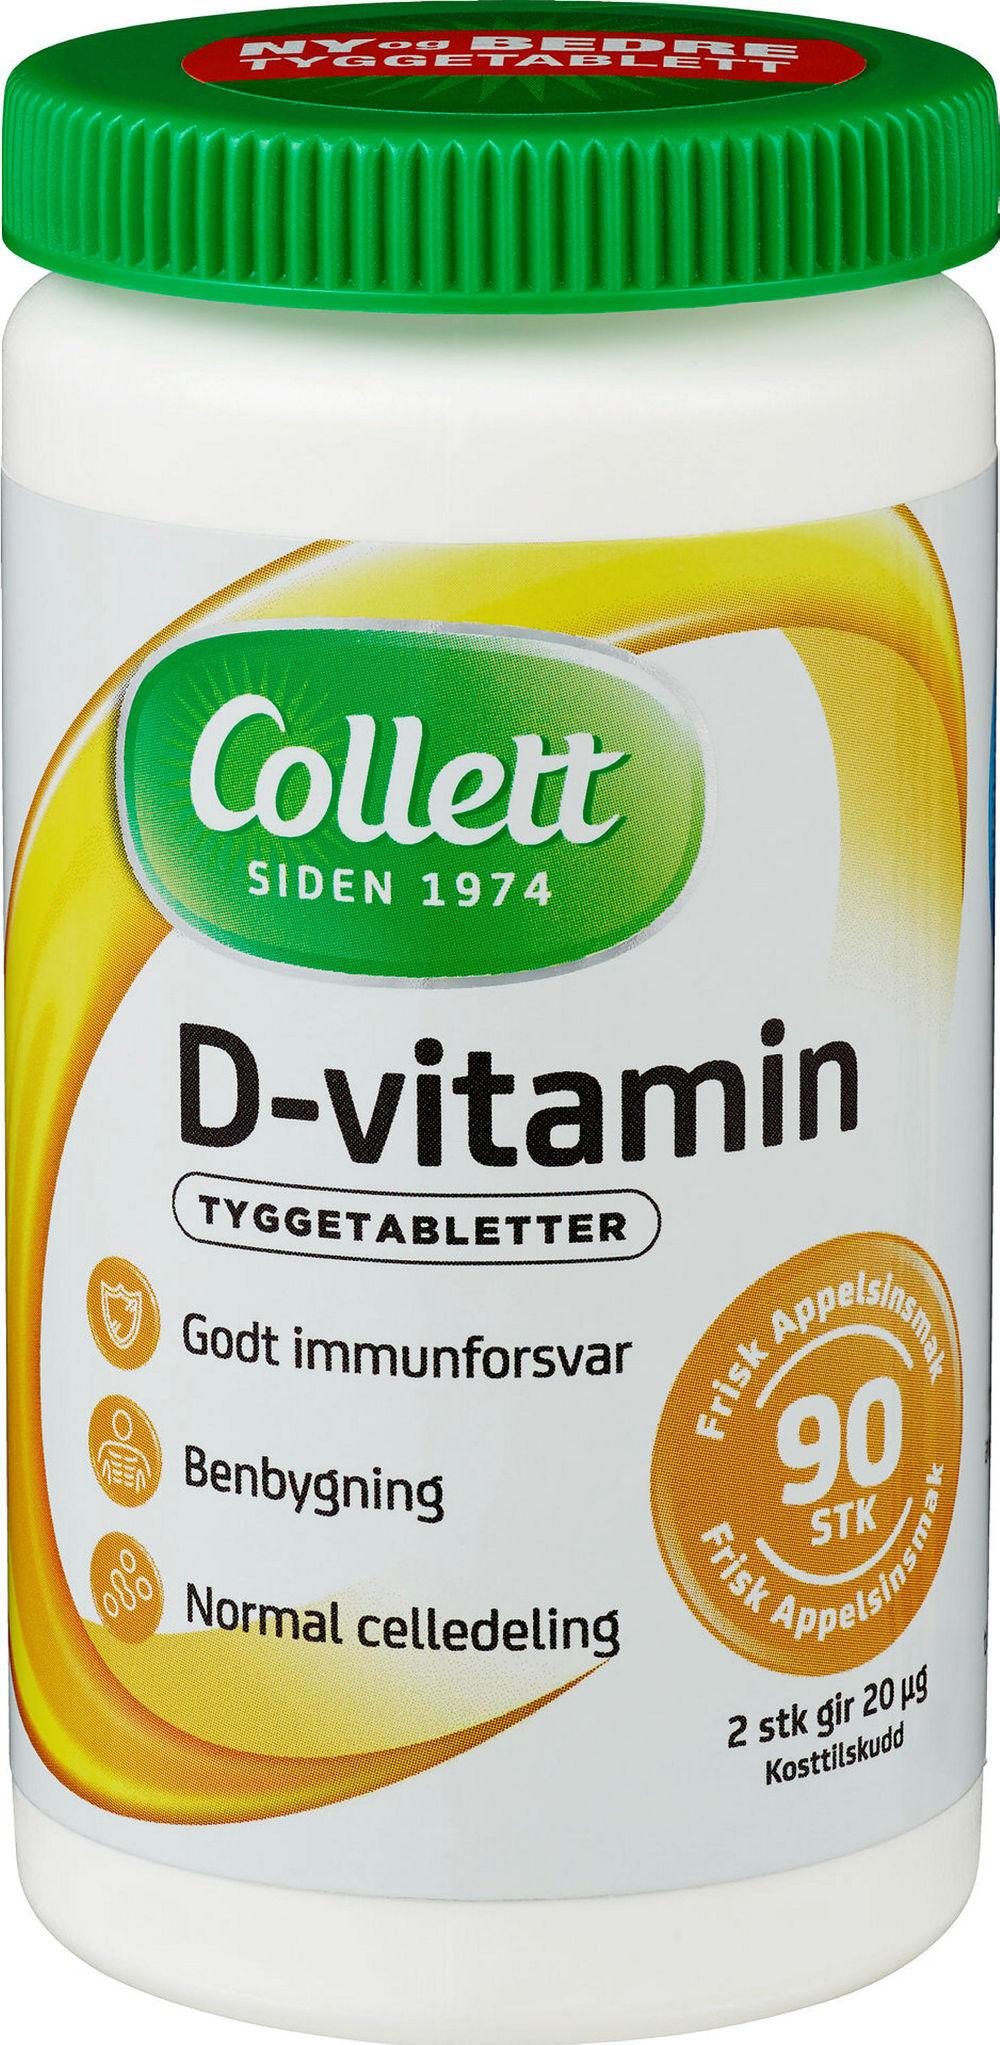 Collett D-Vitamin 90 stk